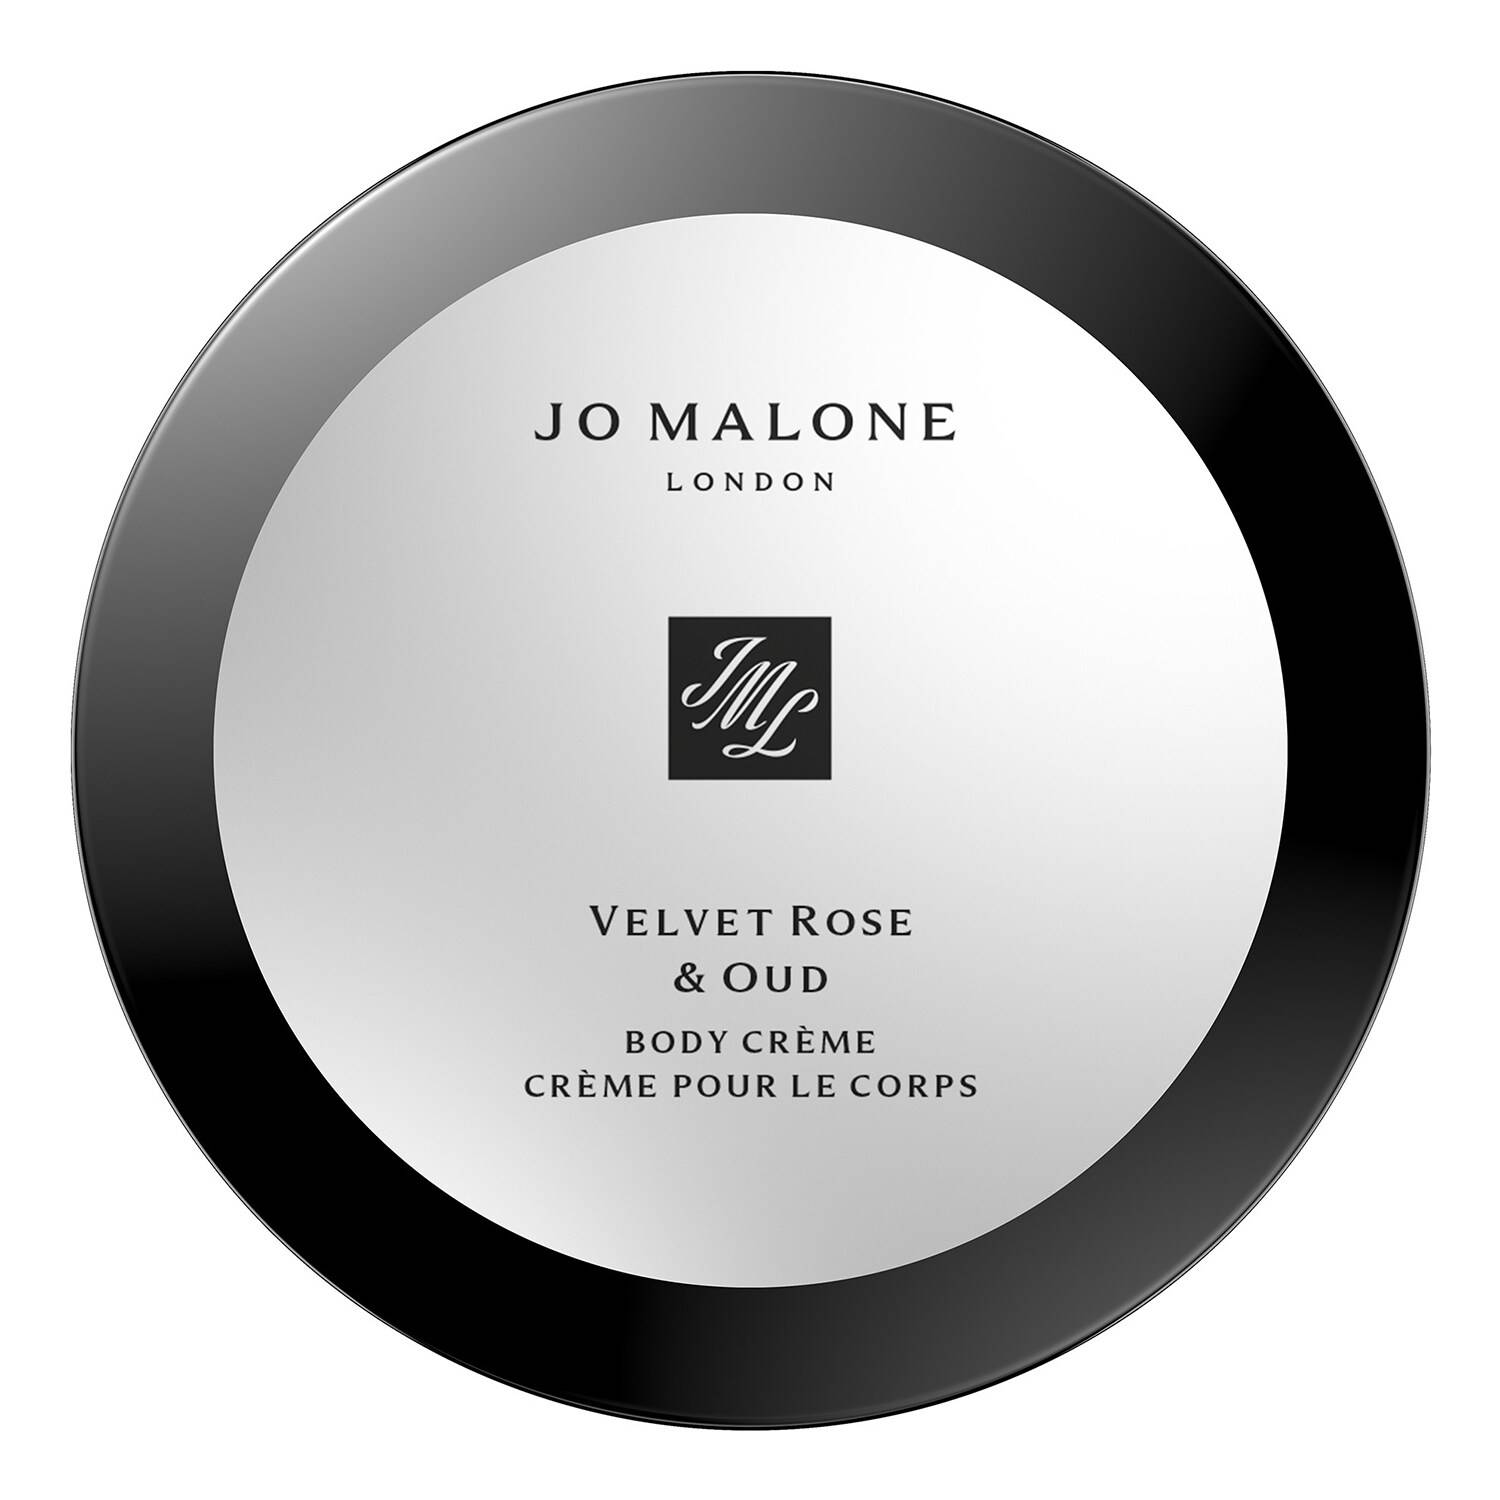 Jo Malone London Velvet Rose & Oud Body Creme Velvet Rose & Oud Body Creme